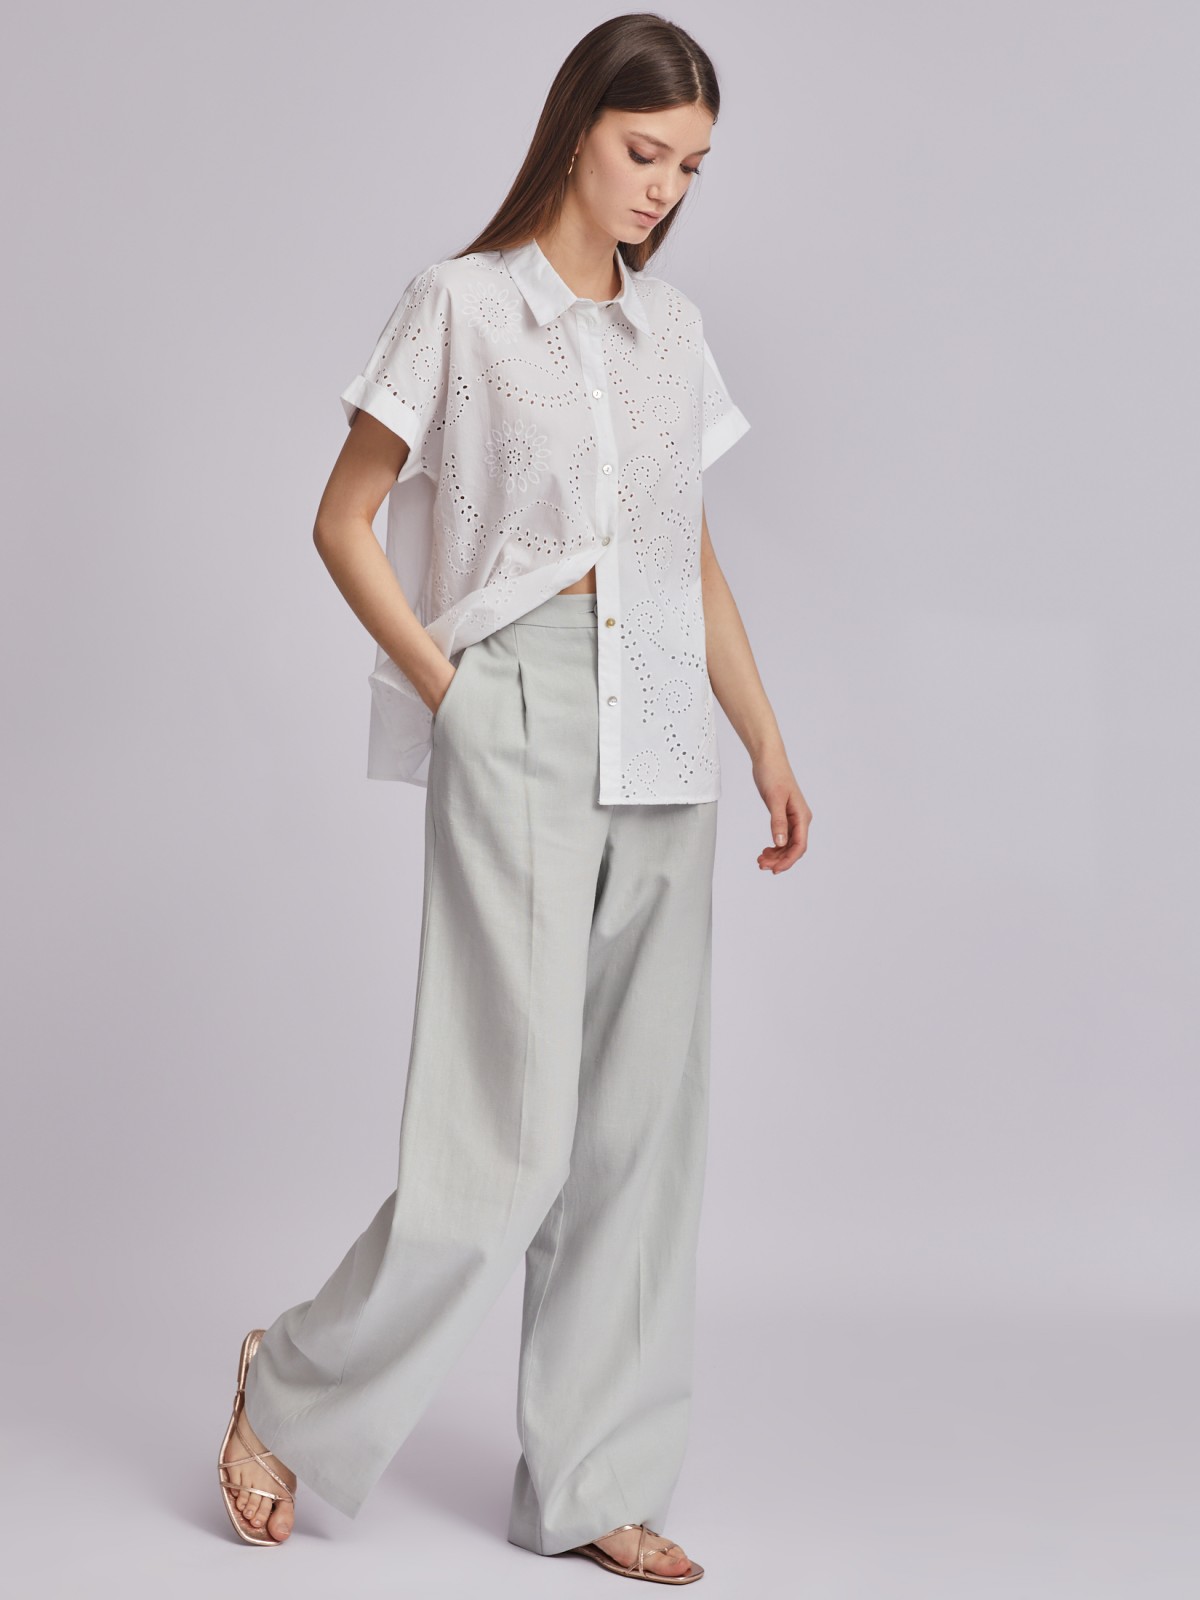 Рубашка из хлопка с коротким рукавом и ажурной вышивкой zolla 023251259023, цвет белый, размер XS - фото 2